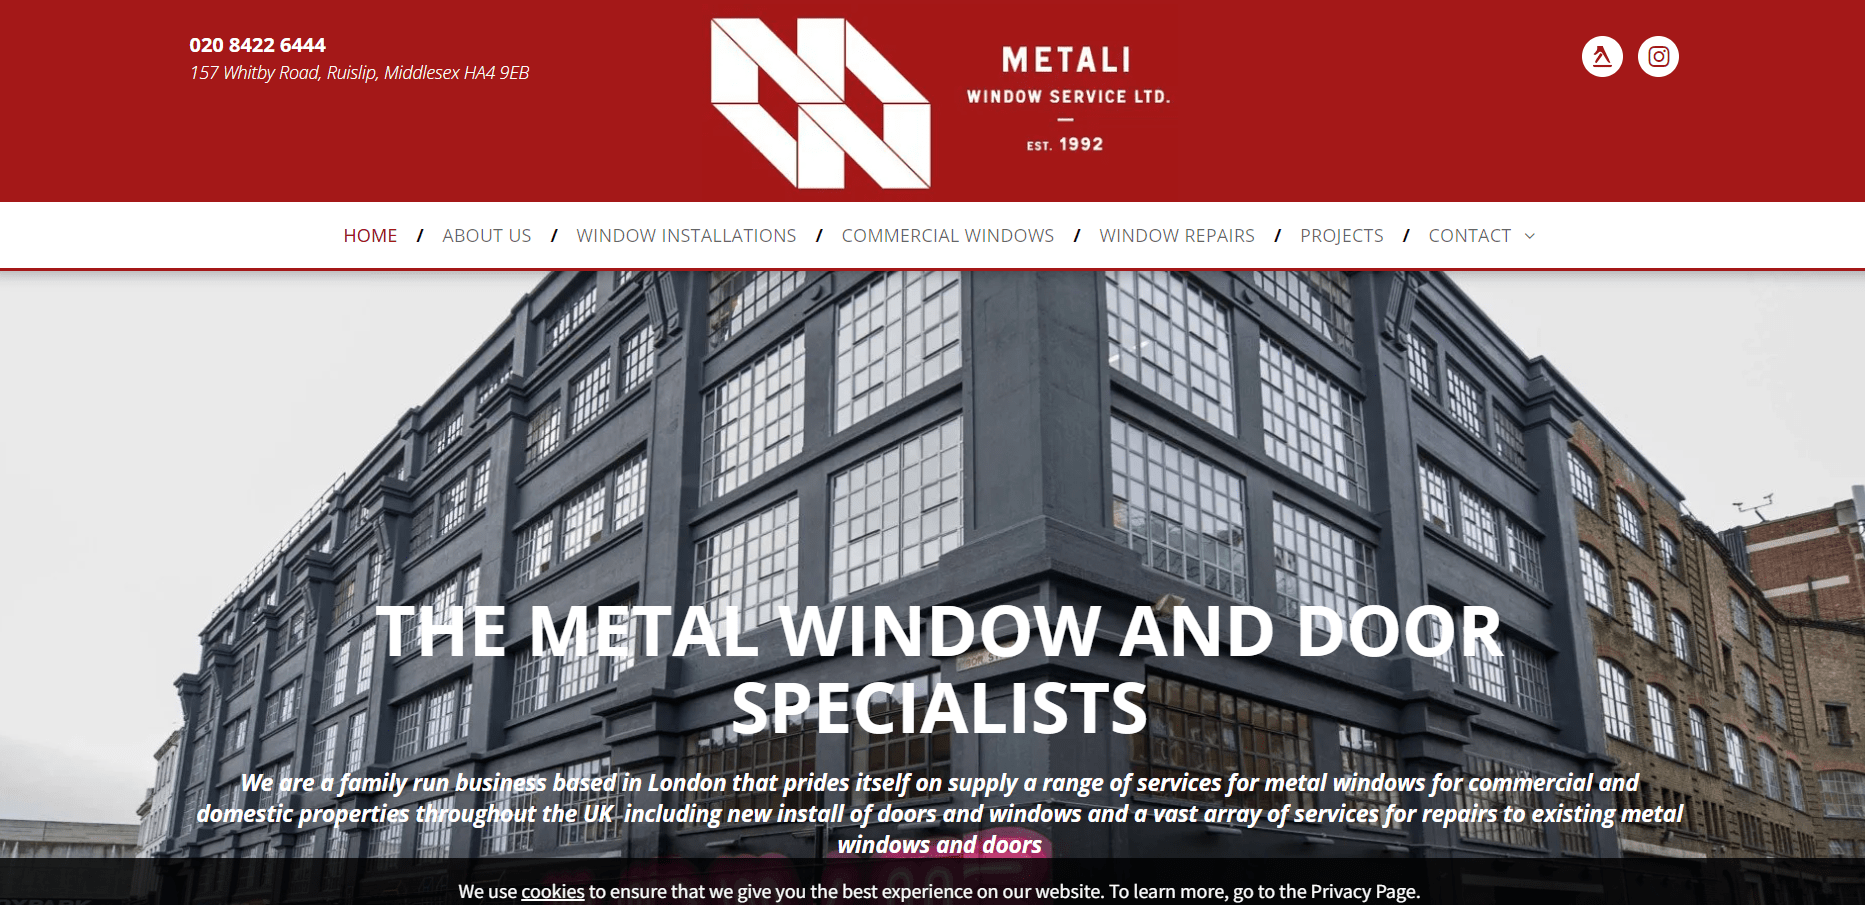 Metali Window Service Ltd